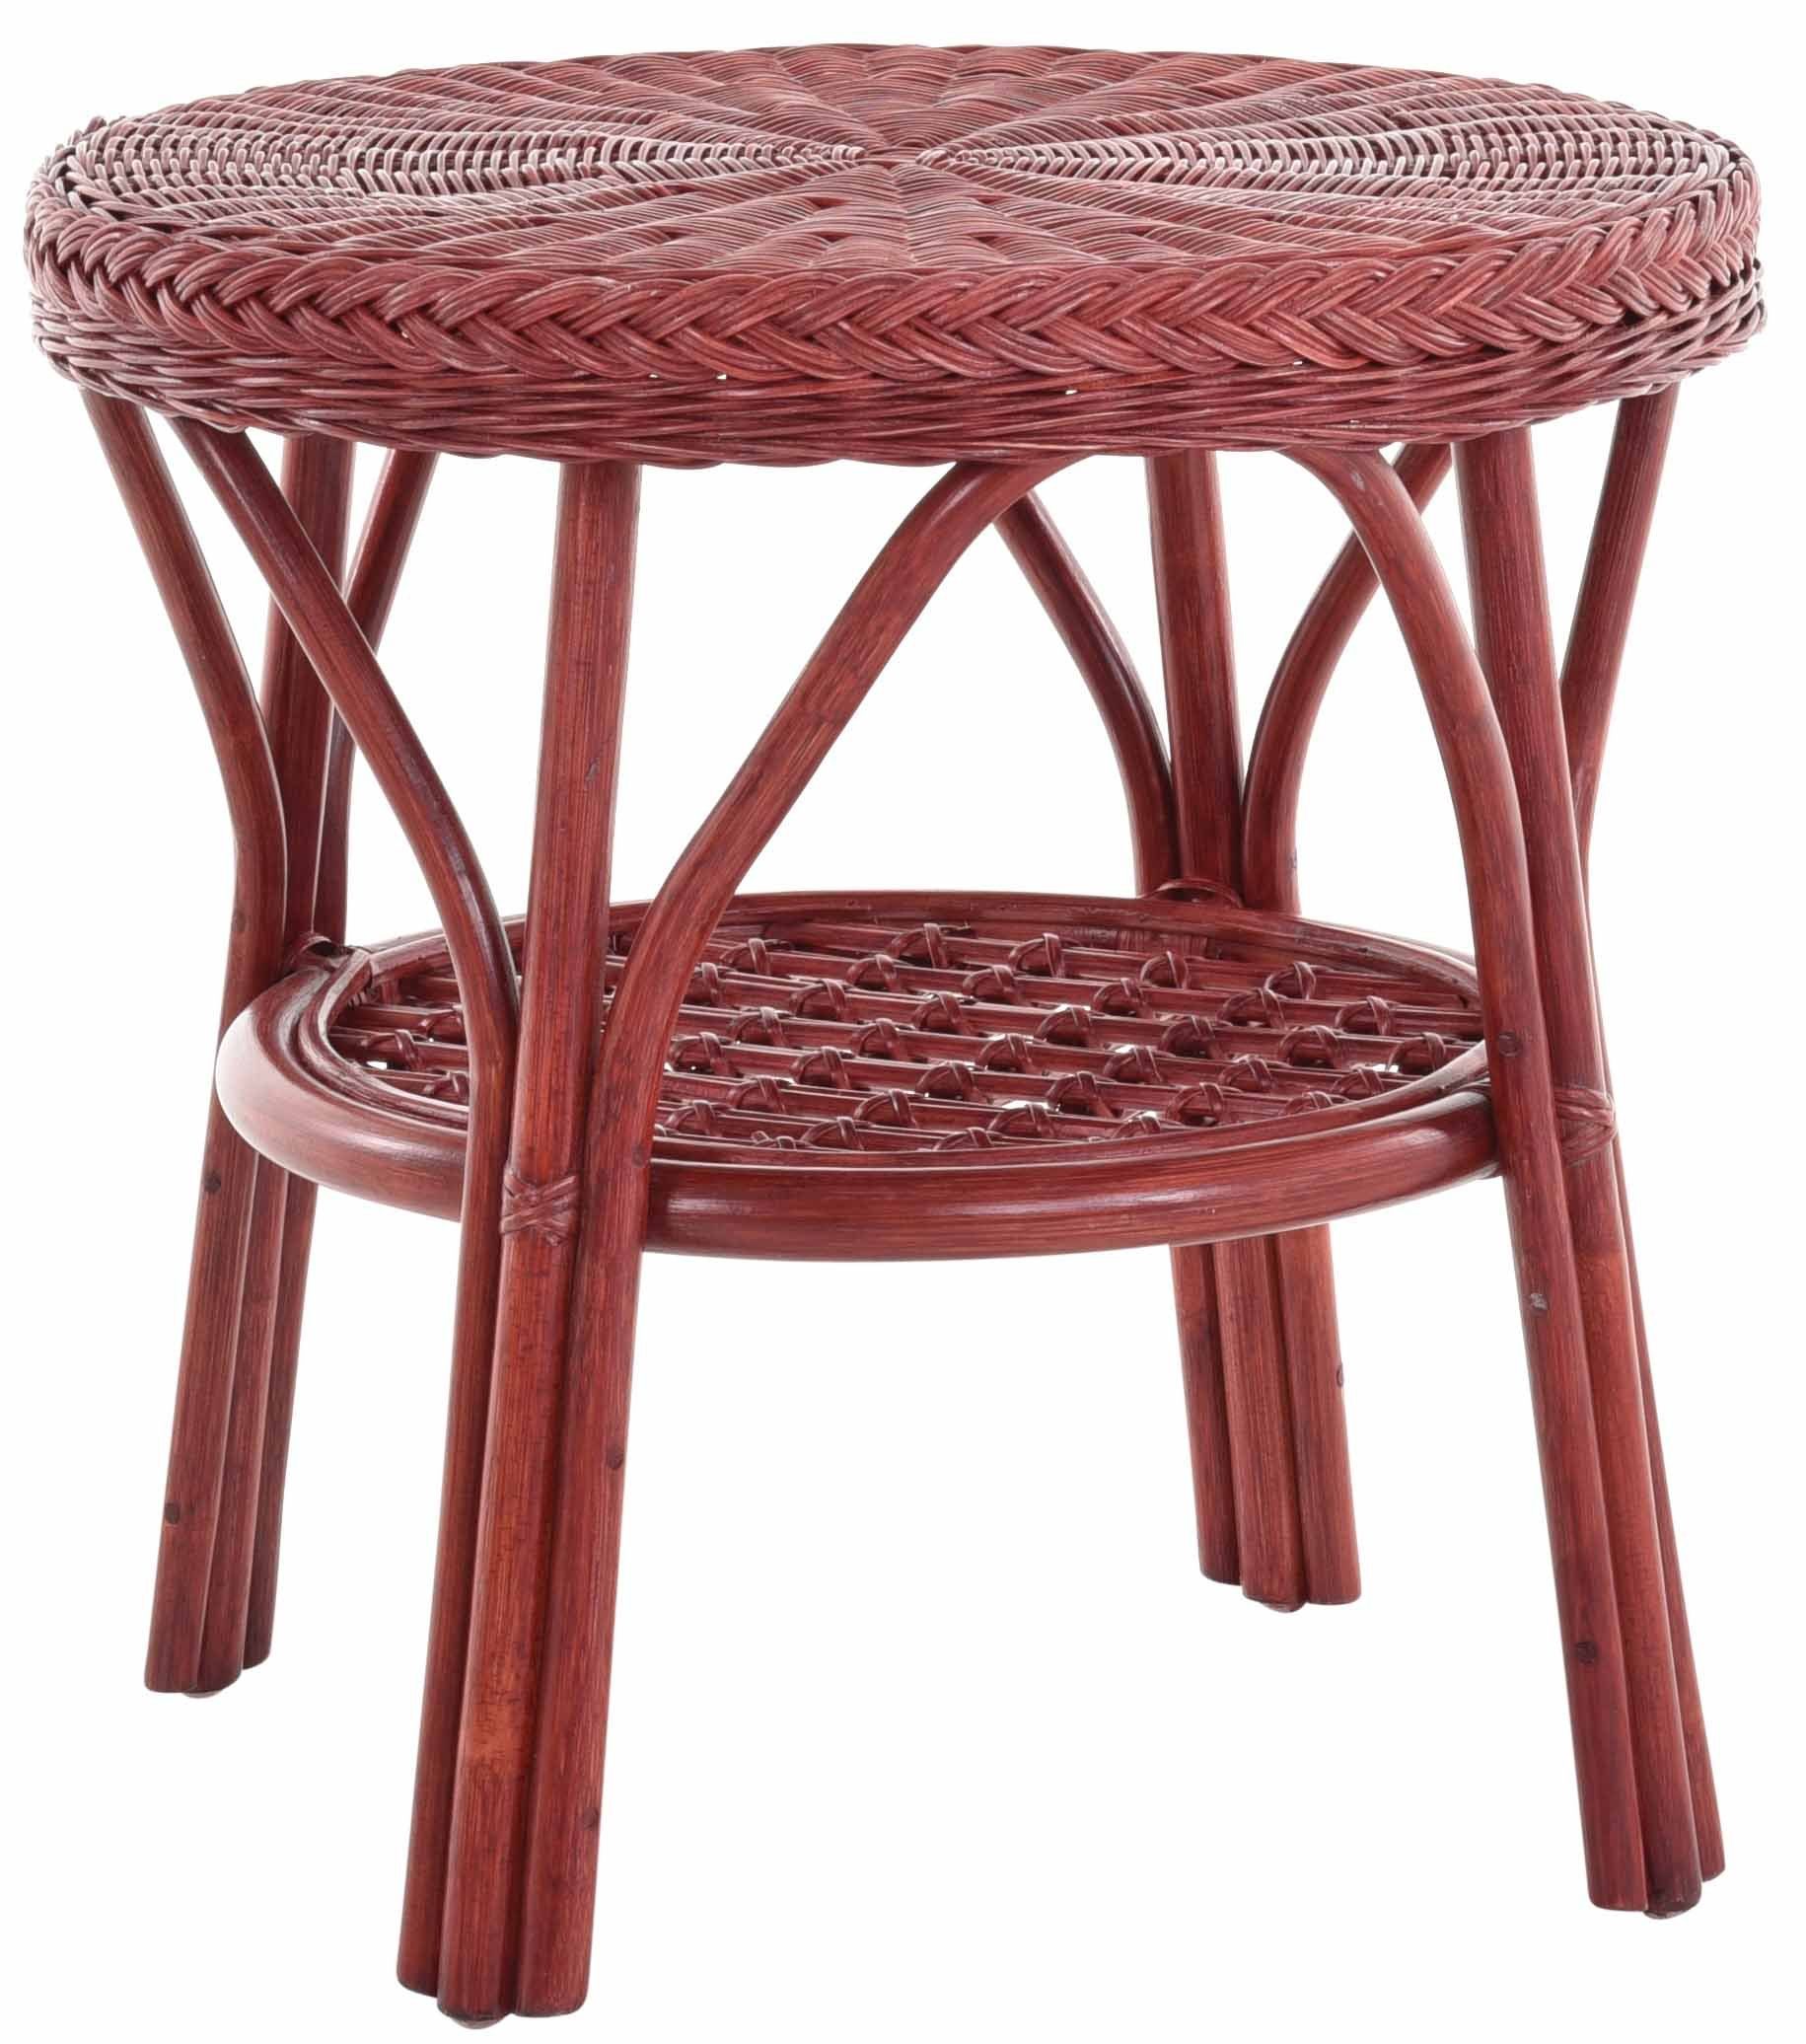 Rattantisch Wohnzimmer Home Tisch, Rattan mit für Rund Rot Wohnzimmertisch Ablage Krines Beistelltisch Couchtisch Bordeaux